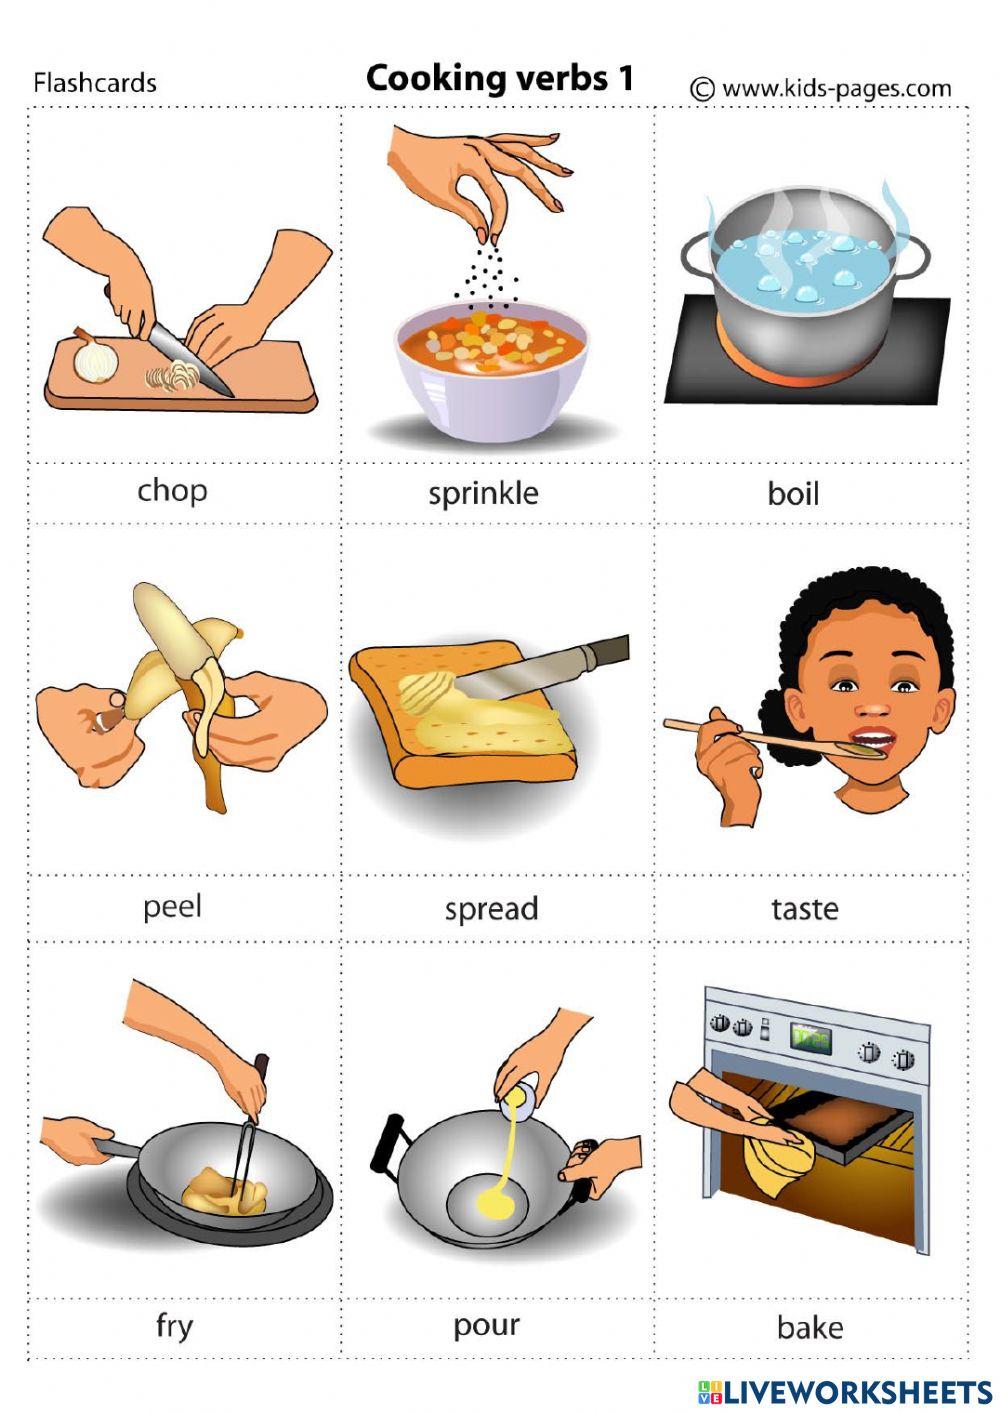 Cooking tasks. Cooking verbs английский. Глаголы готовки на английском. Приготовление еды на английском языке. Глаголы приготовления пищи на английском.